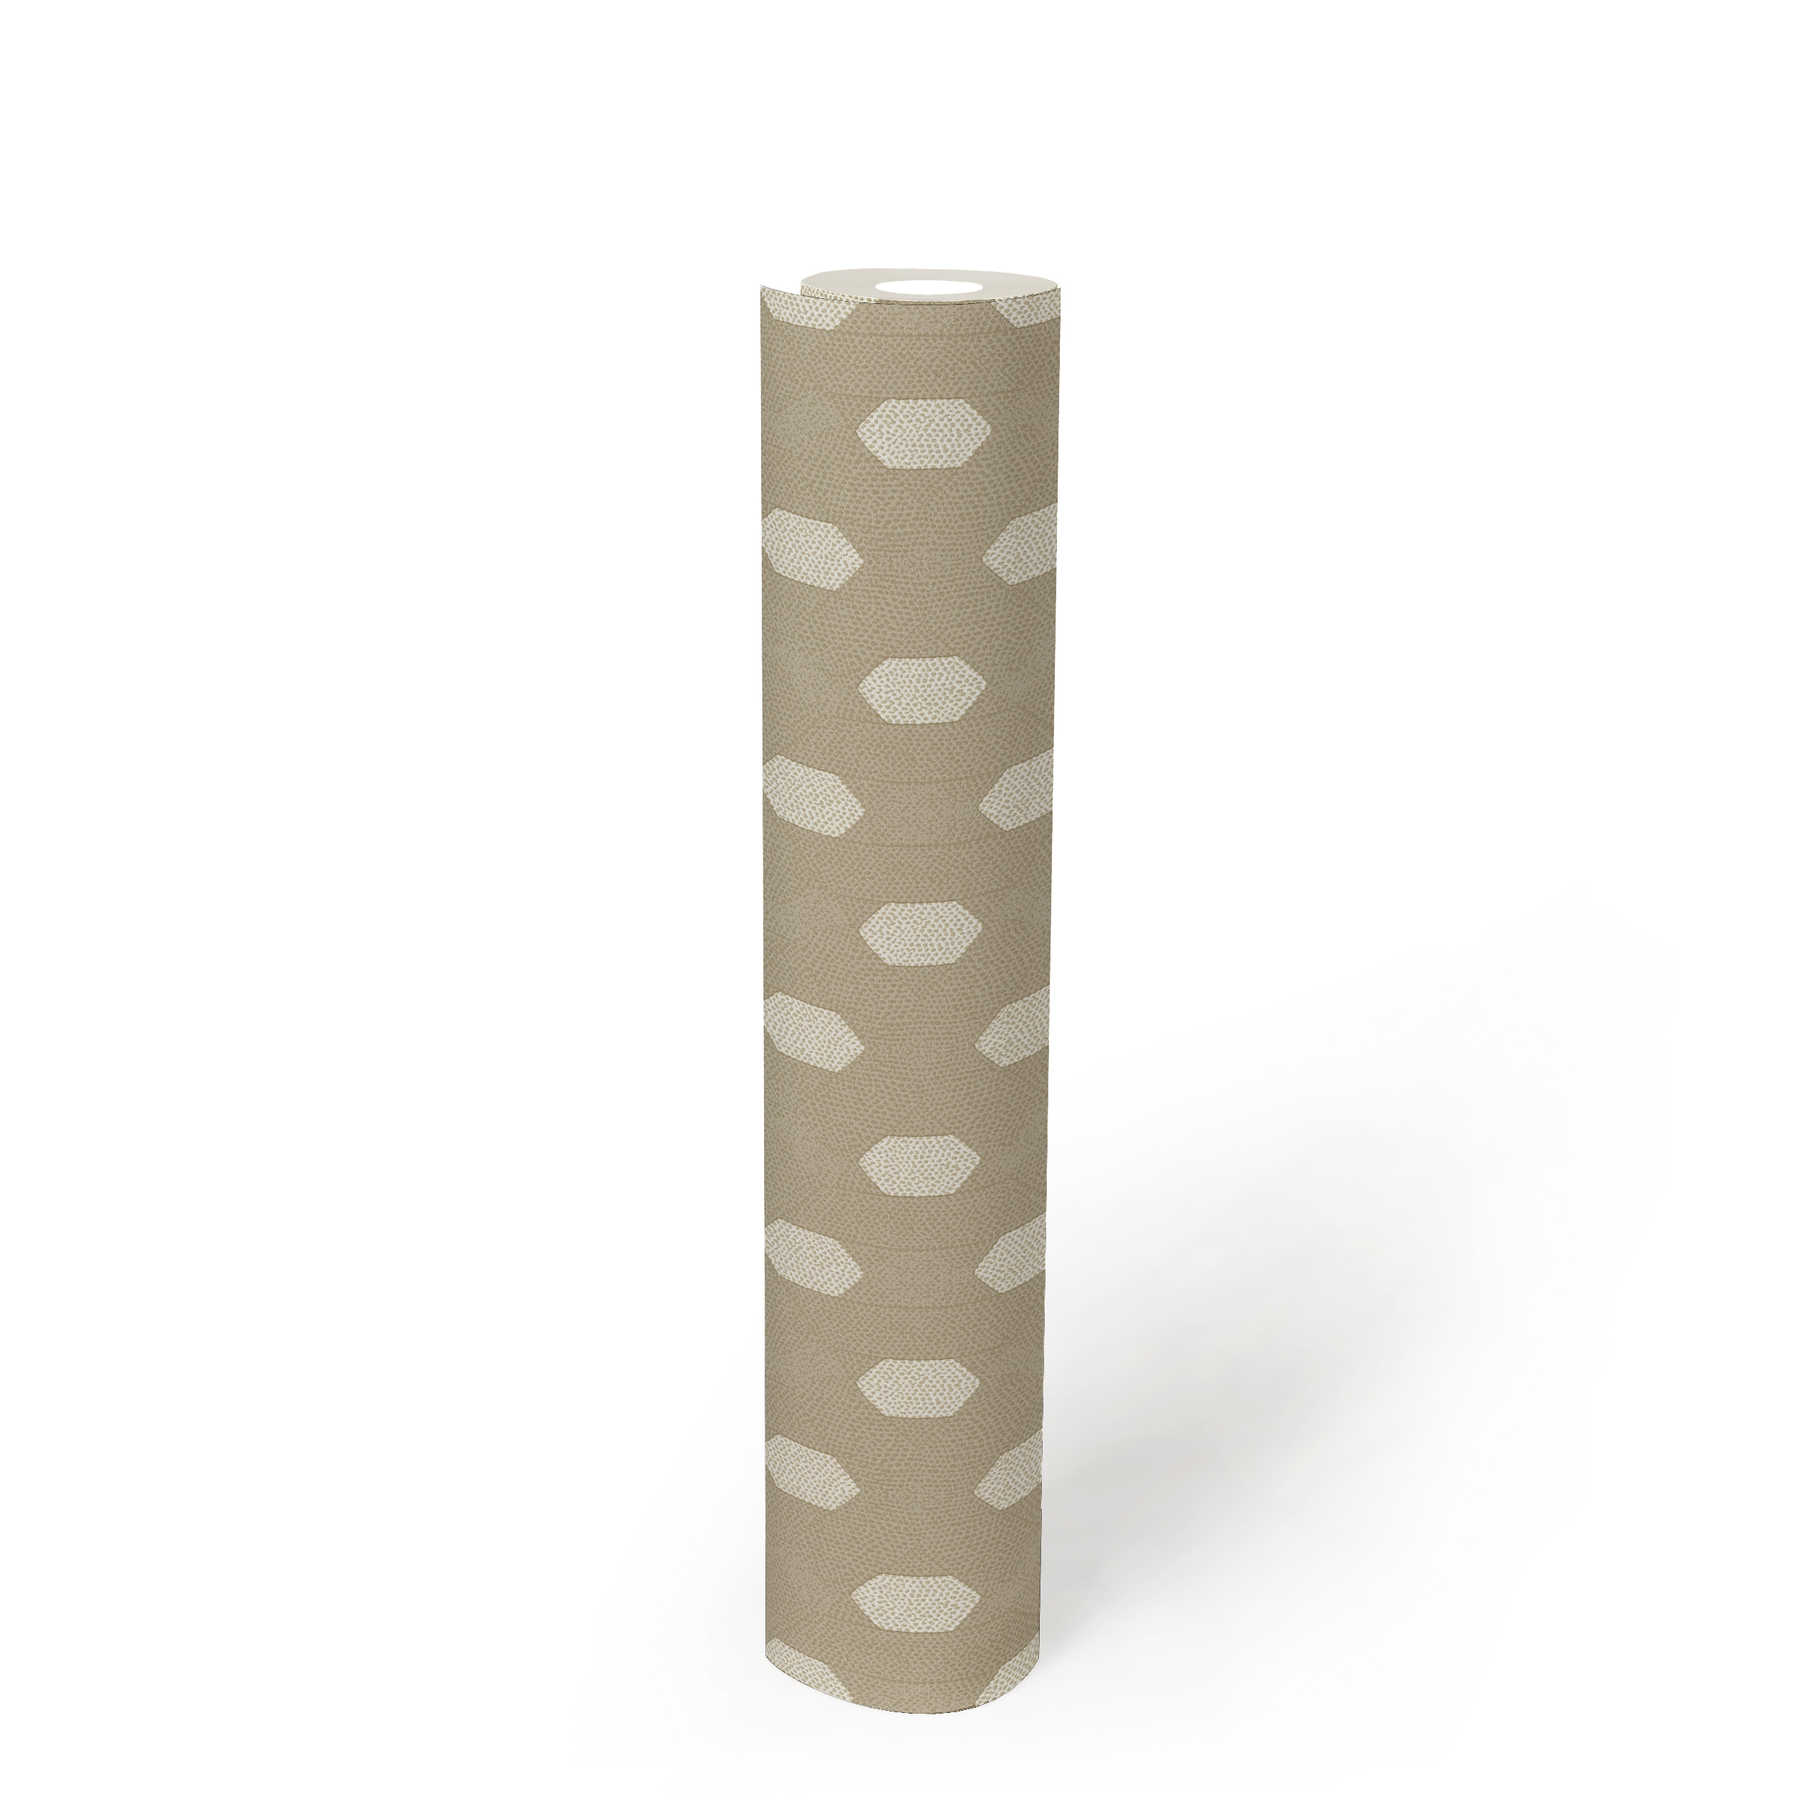             Beige papier peint intissé motif géométrique - crème, or, beige
        